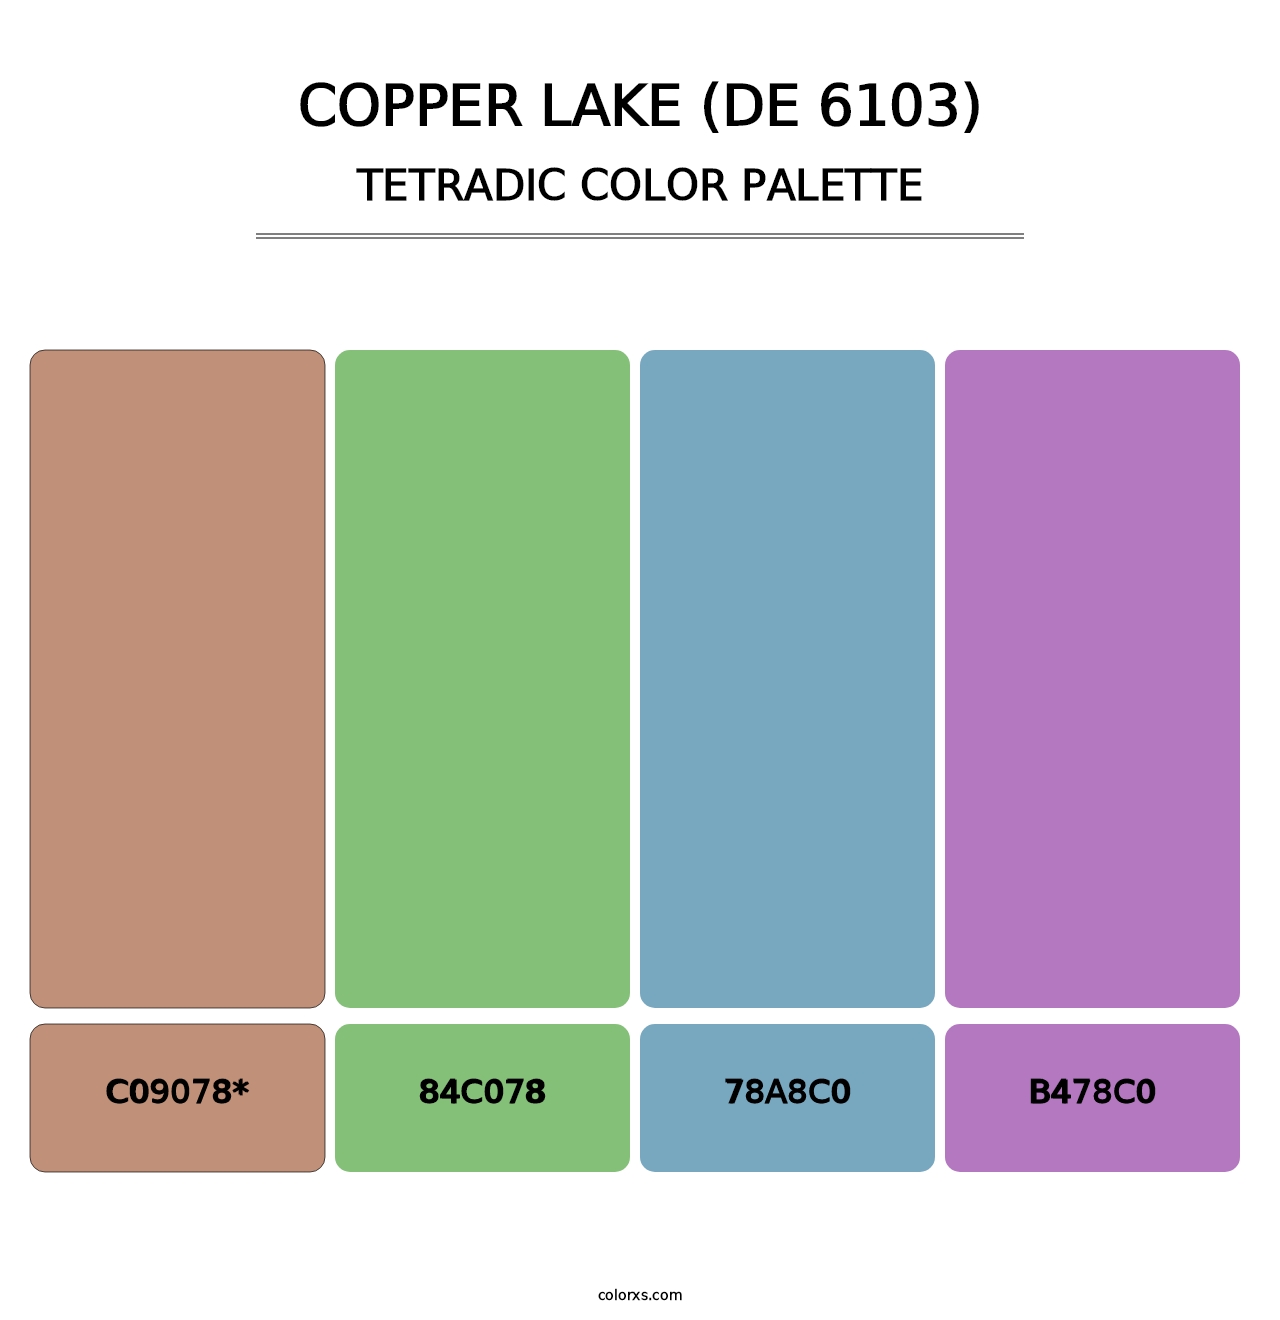 Copper Lake (DE 6103) - Tetradic Color Palette